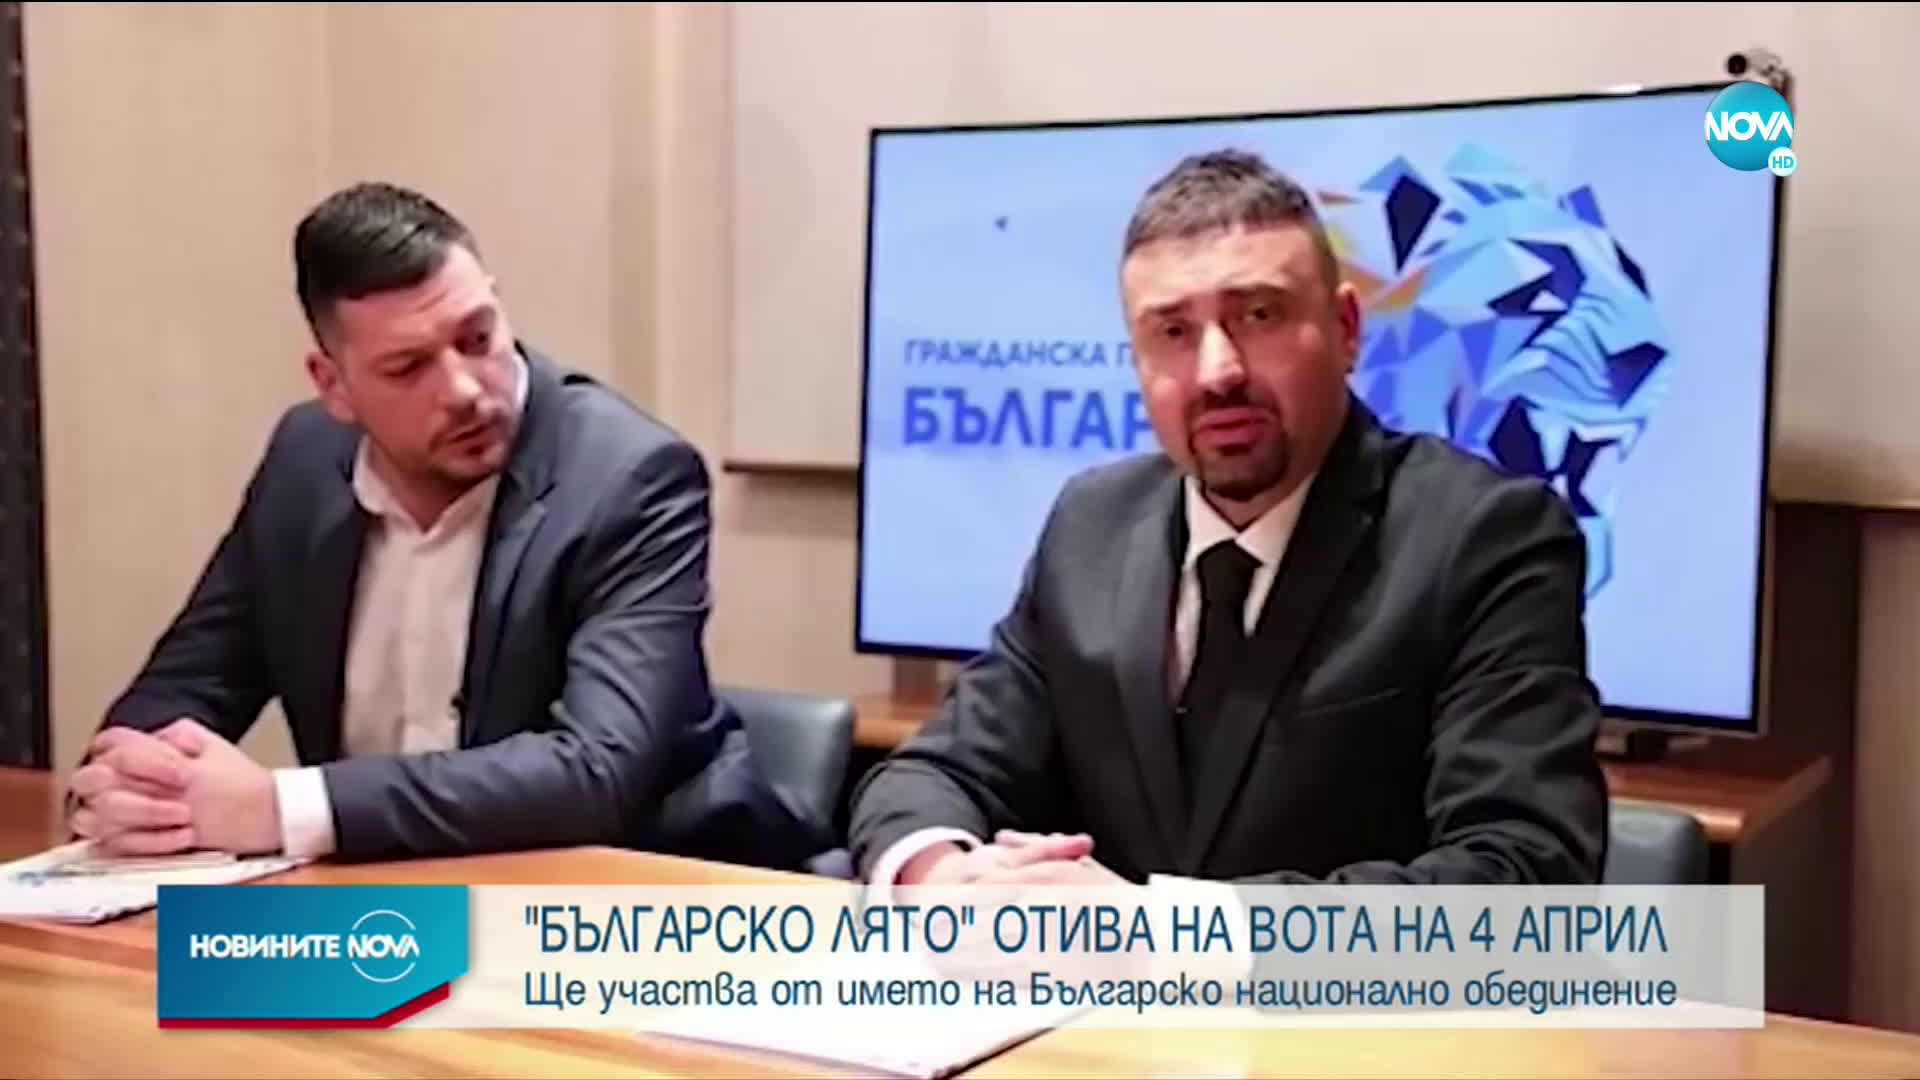 Божков ще участва на изборите чрез партията „Българско национално обединение“